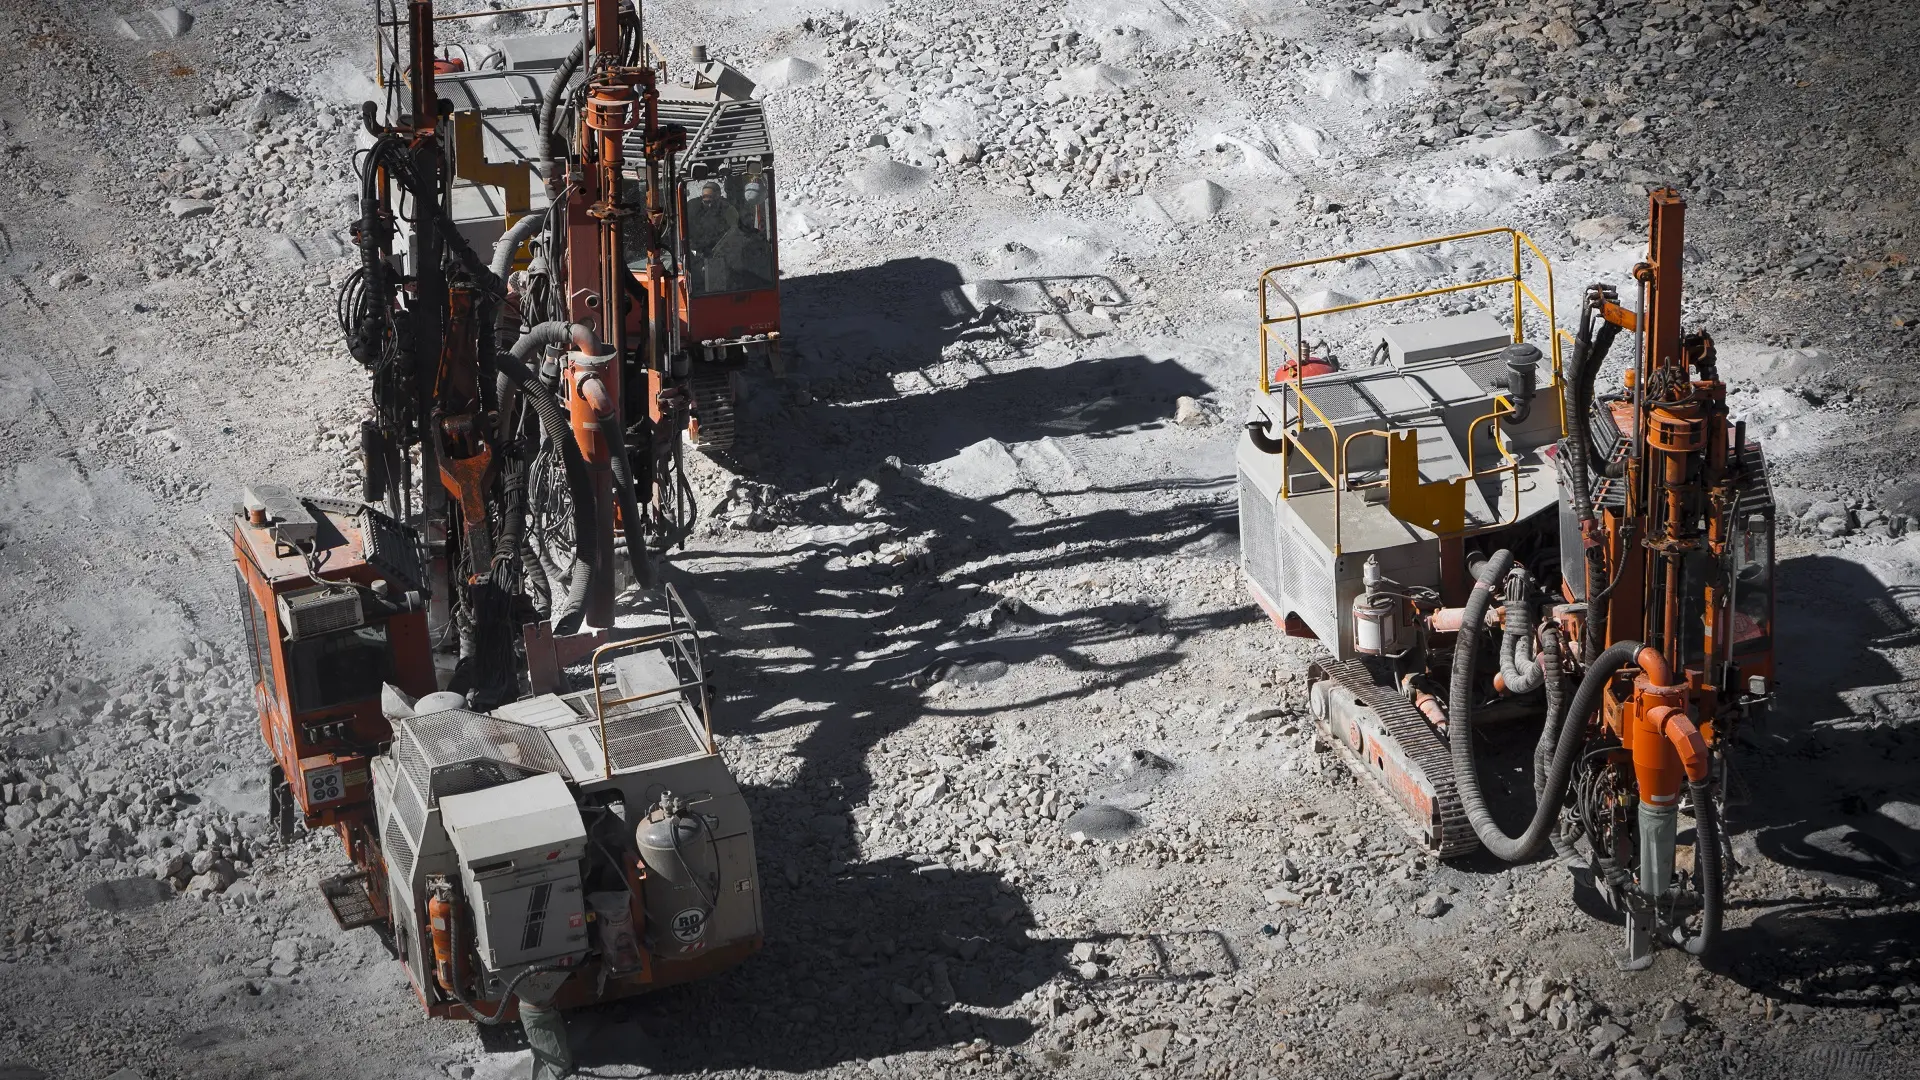 iskopavanje litijuma, litijum, zapadna australija, rudarenje, rudarstvo - shutterstock-66814d9e08200.webp